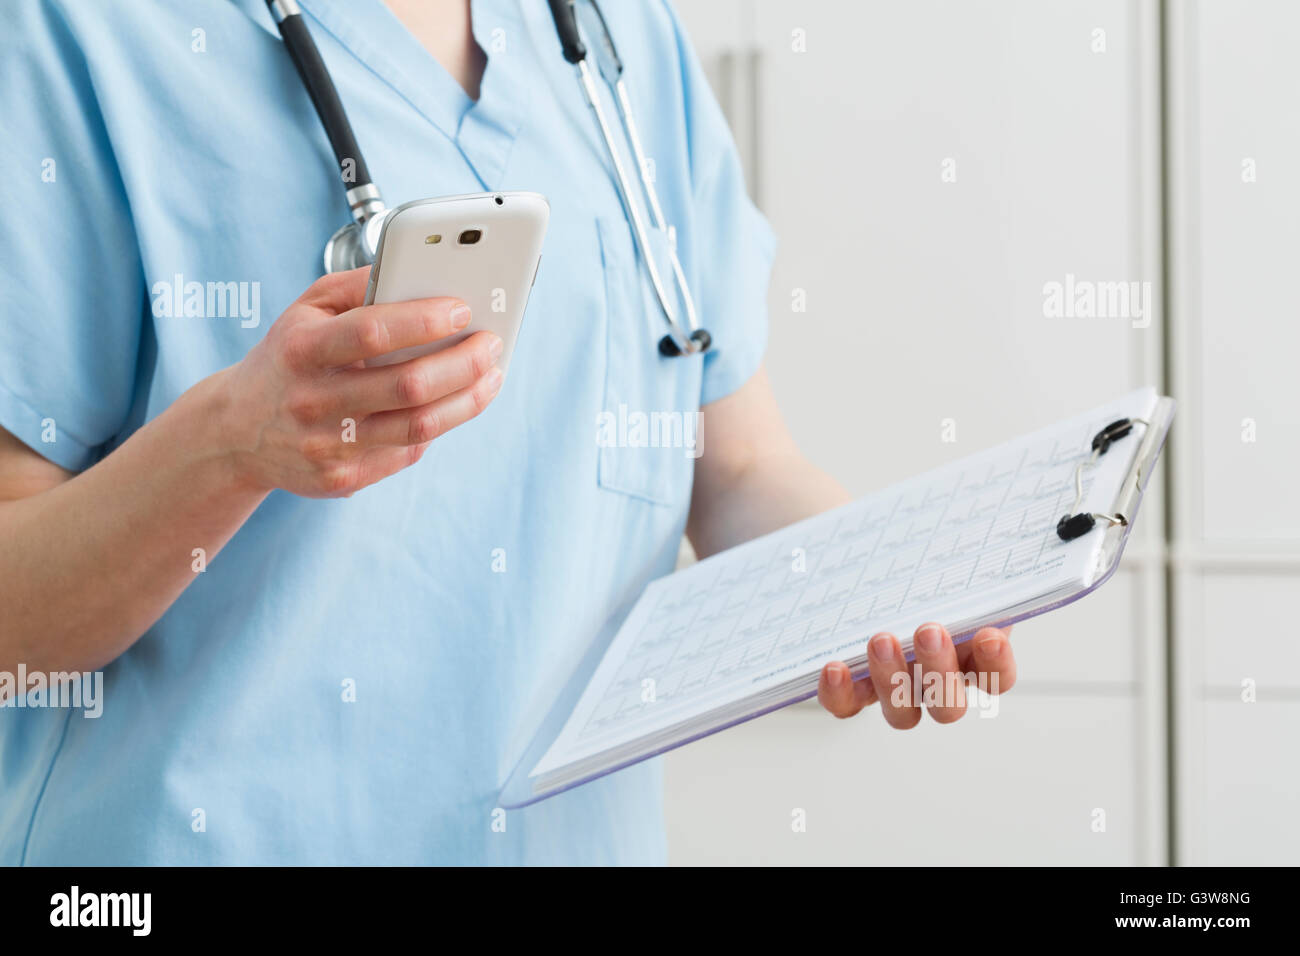 Nurse holding smart phone et les dossiers médicaux Banque D'Images